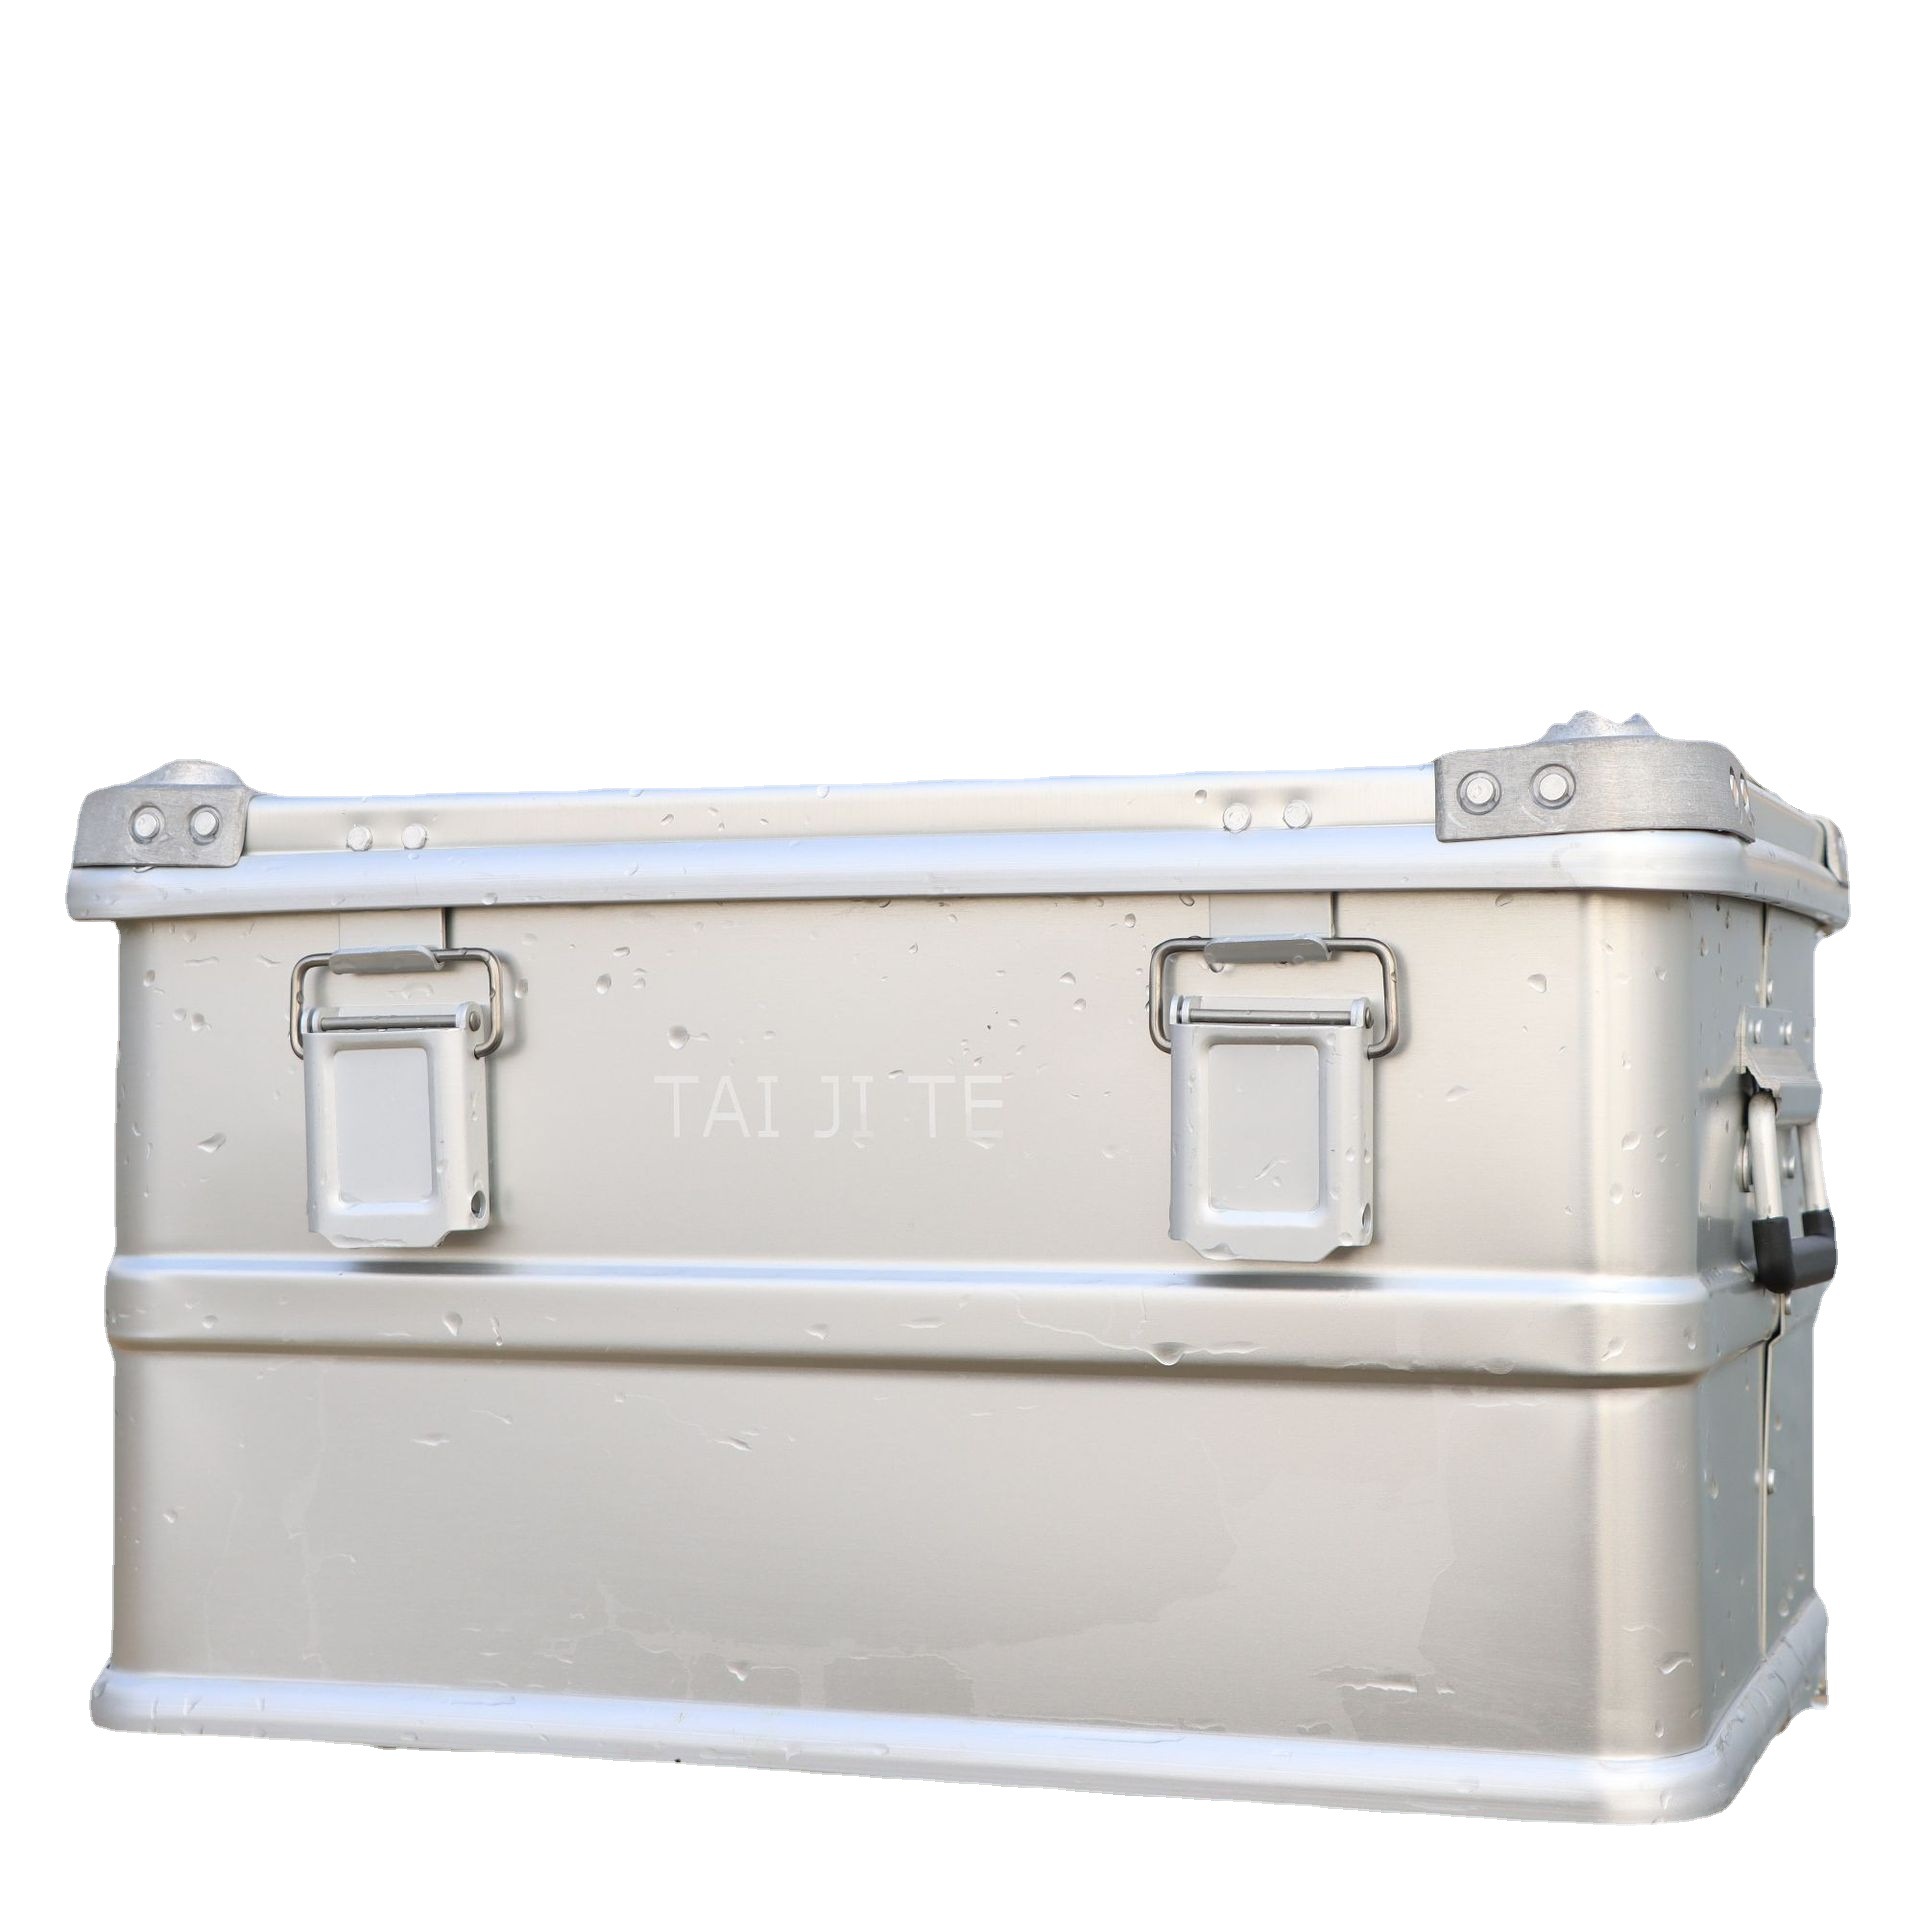 野外应急救援装备收纳箱厂家供应铝合金箱重型铝镁合金户外装备箱